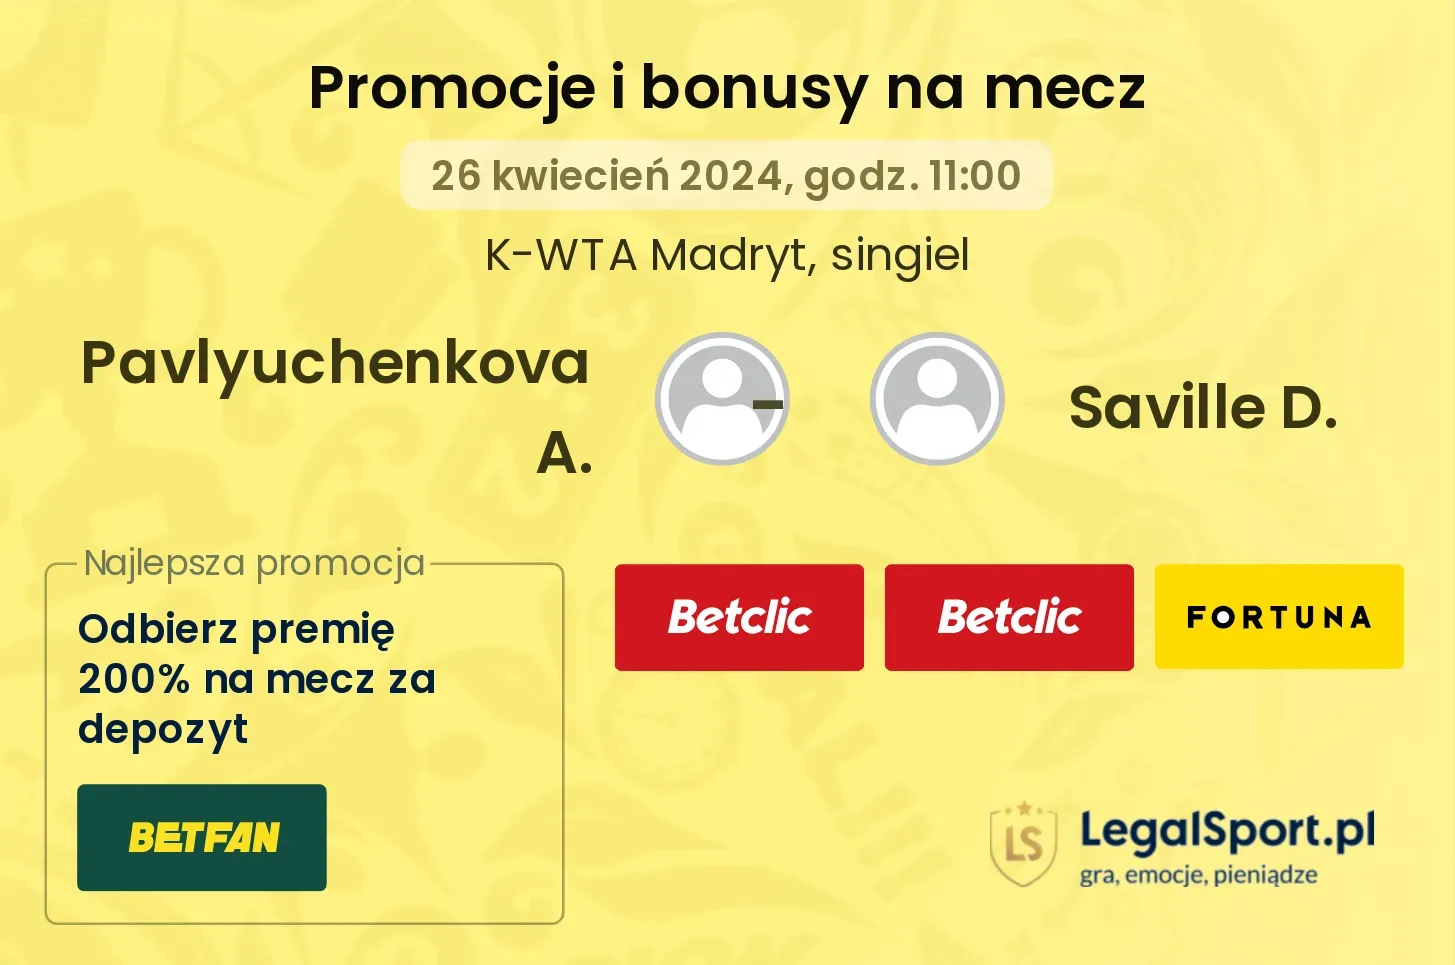 Pavlyuchenkova A. - Saville D. promocje bonusy na mecz